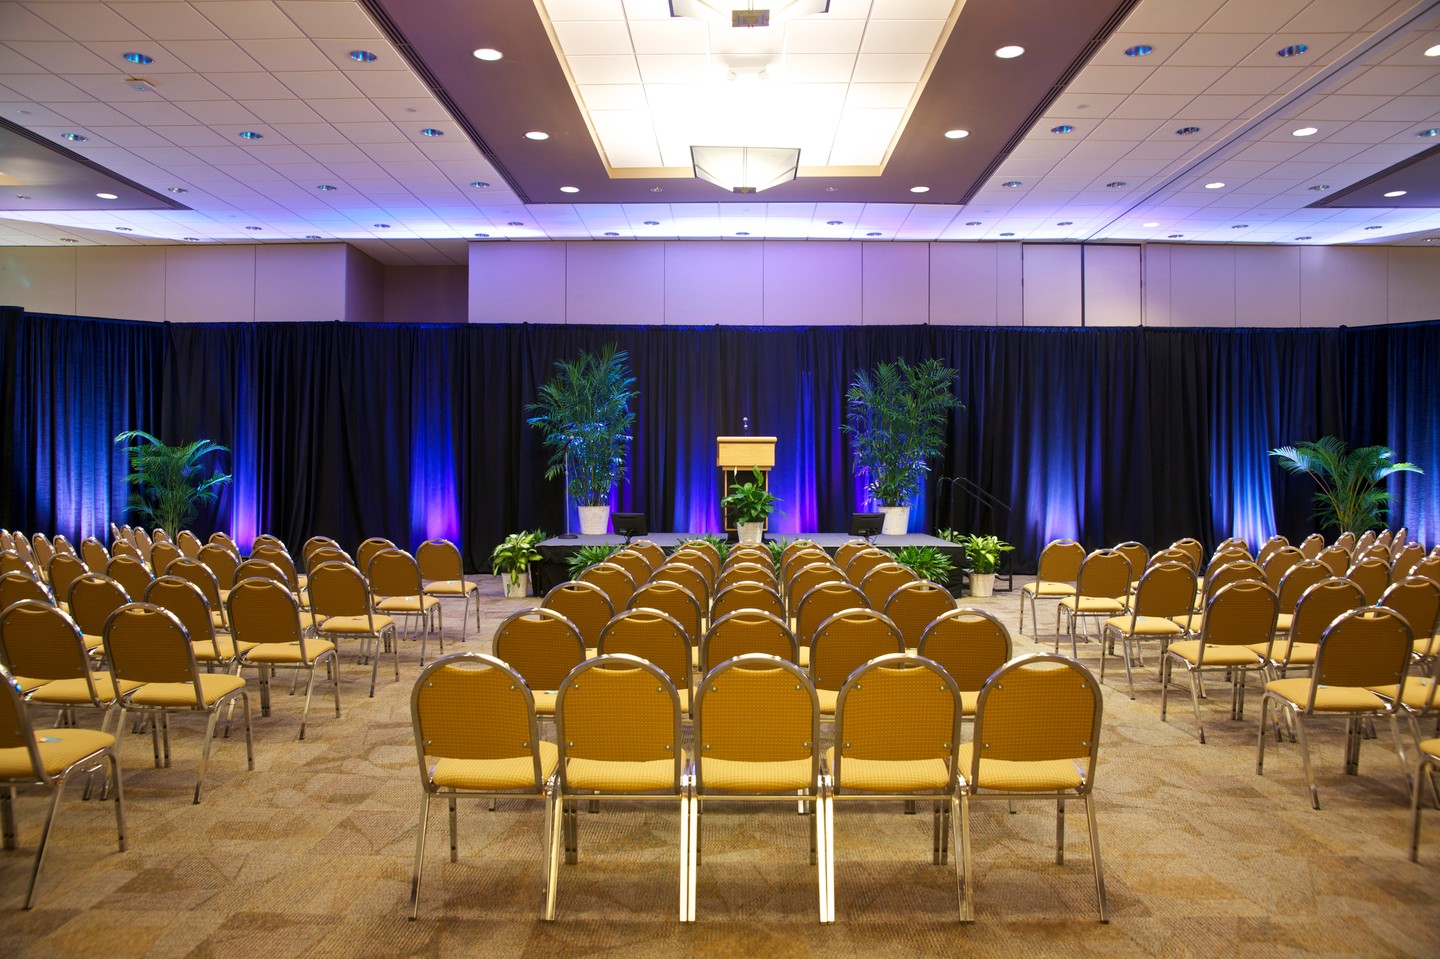 Plan an Event - Convention Center